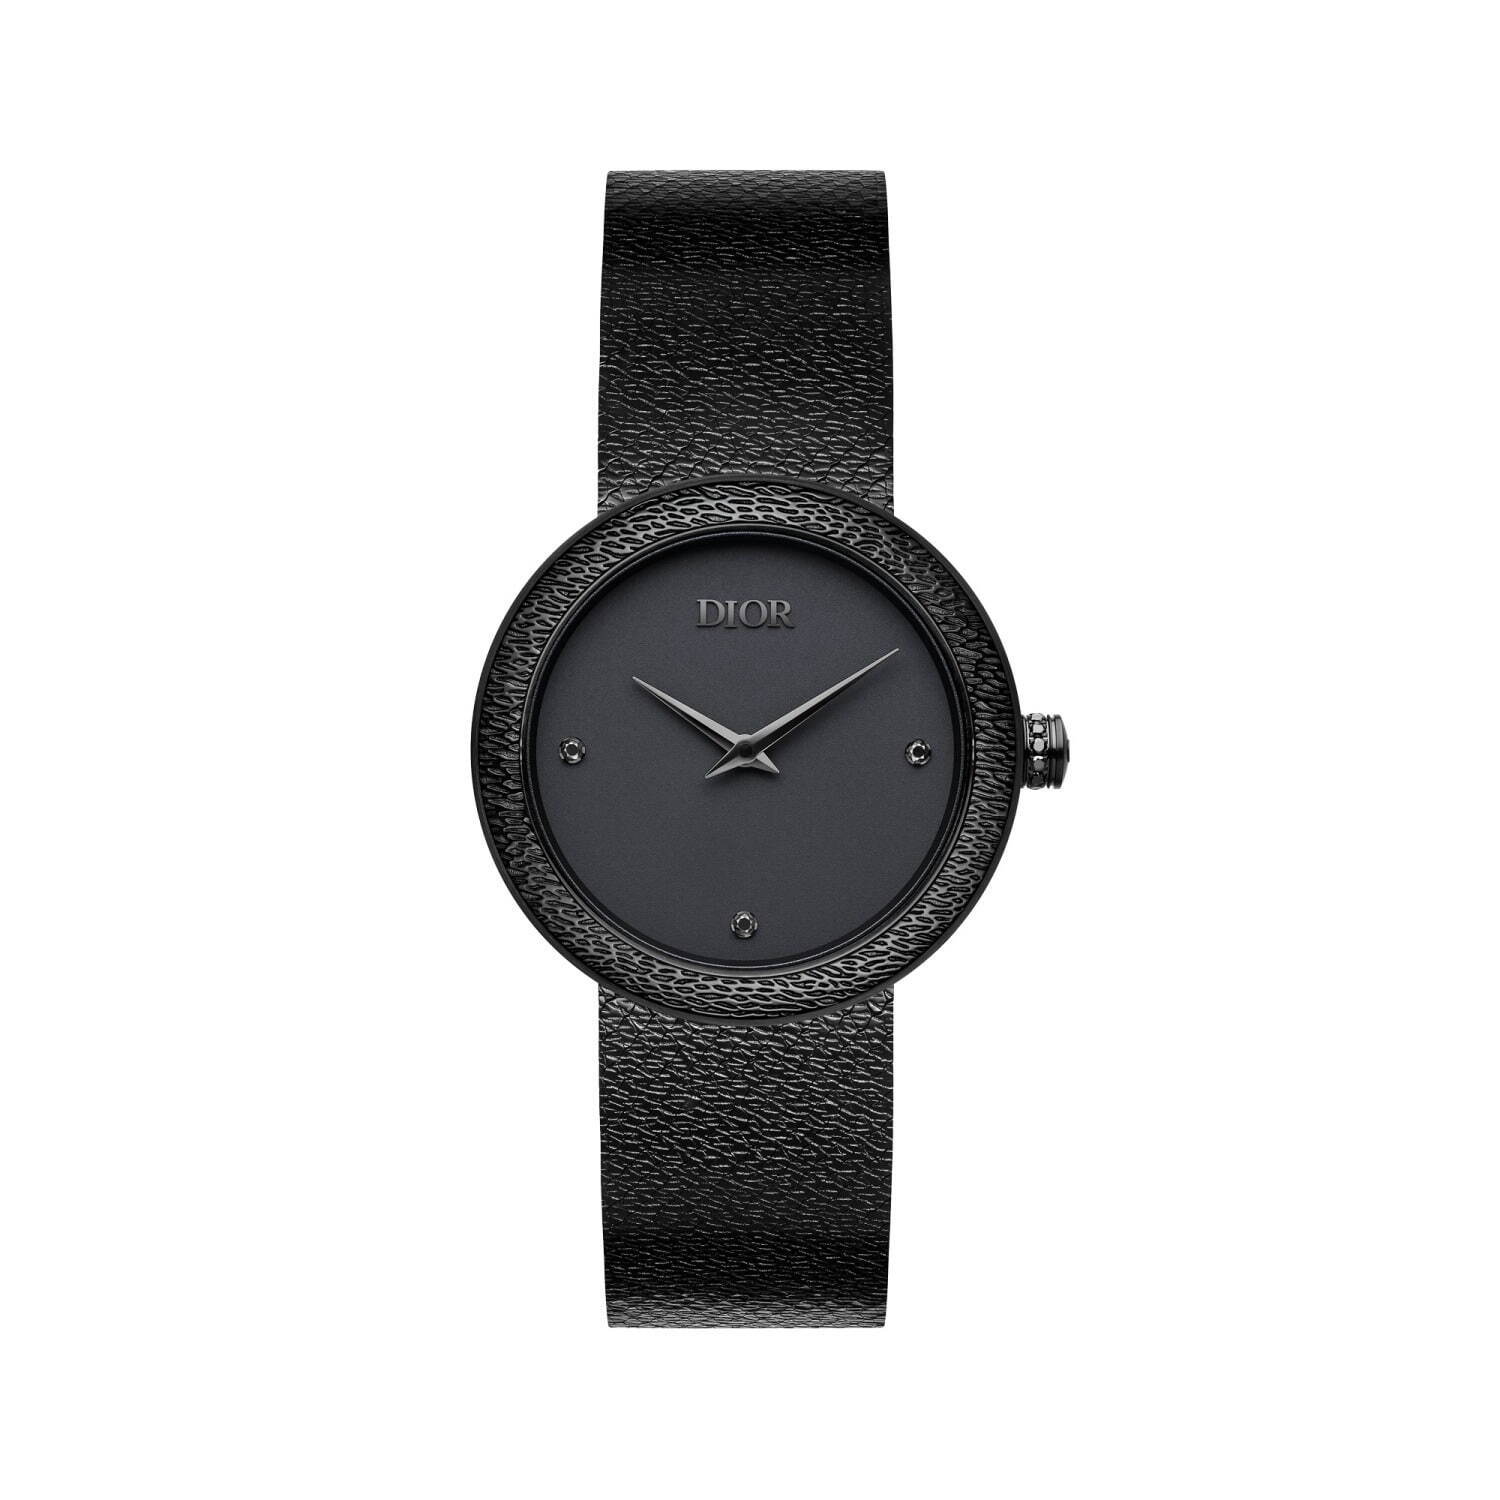 ディオール新作腕時計“マットブラック”の「ラ デ ドゥ ディオール